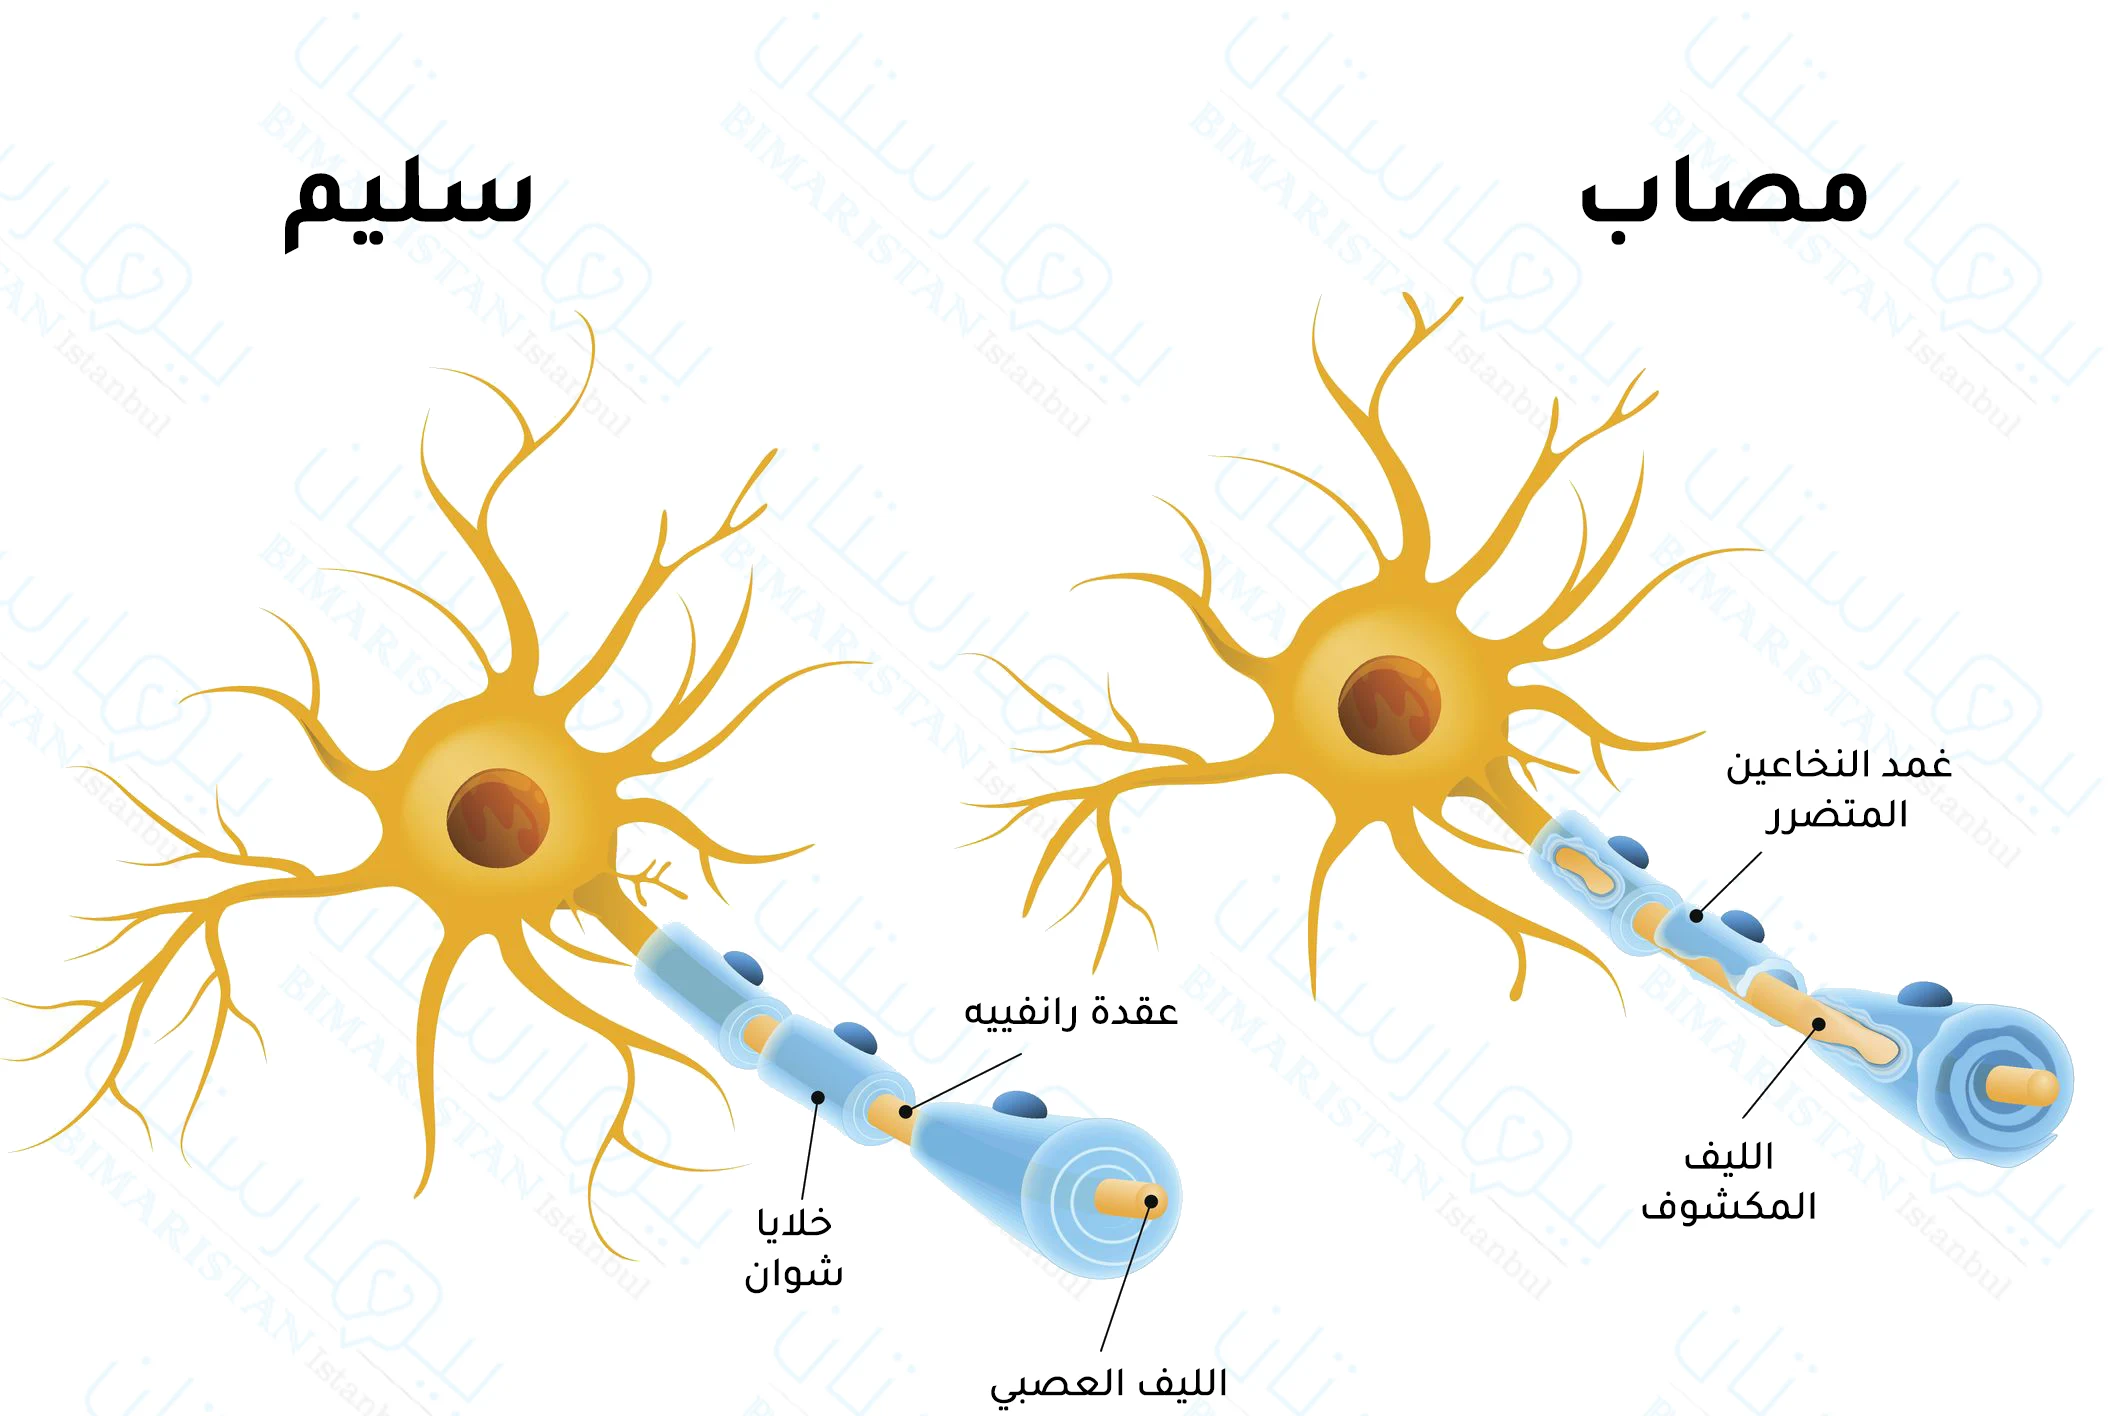 صورة توضح آلية حدوث التصلب اللويحي وكيف أن مناعة الجسم تهاجم أغماد الألياف العصبية